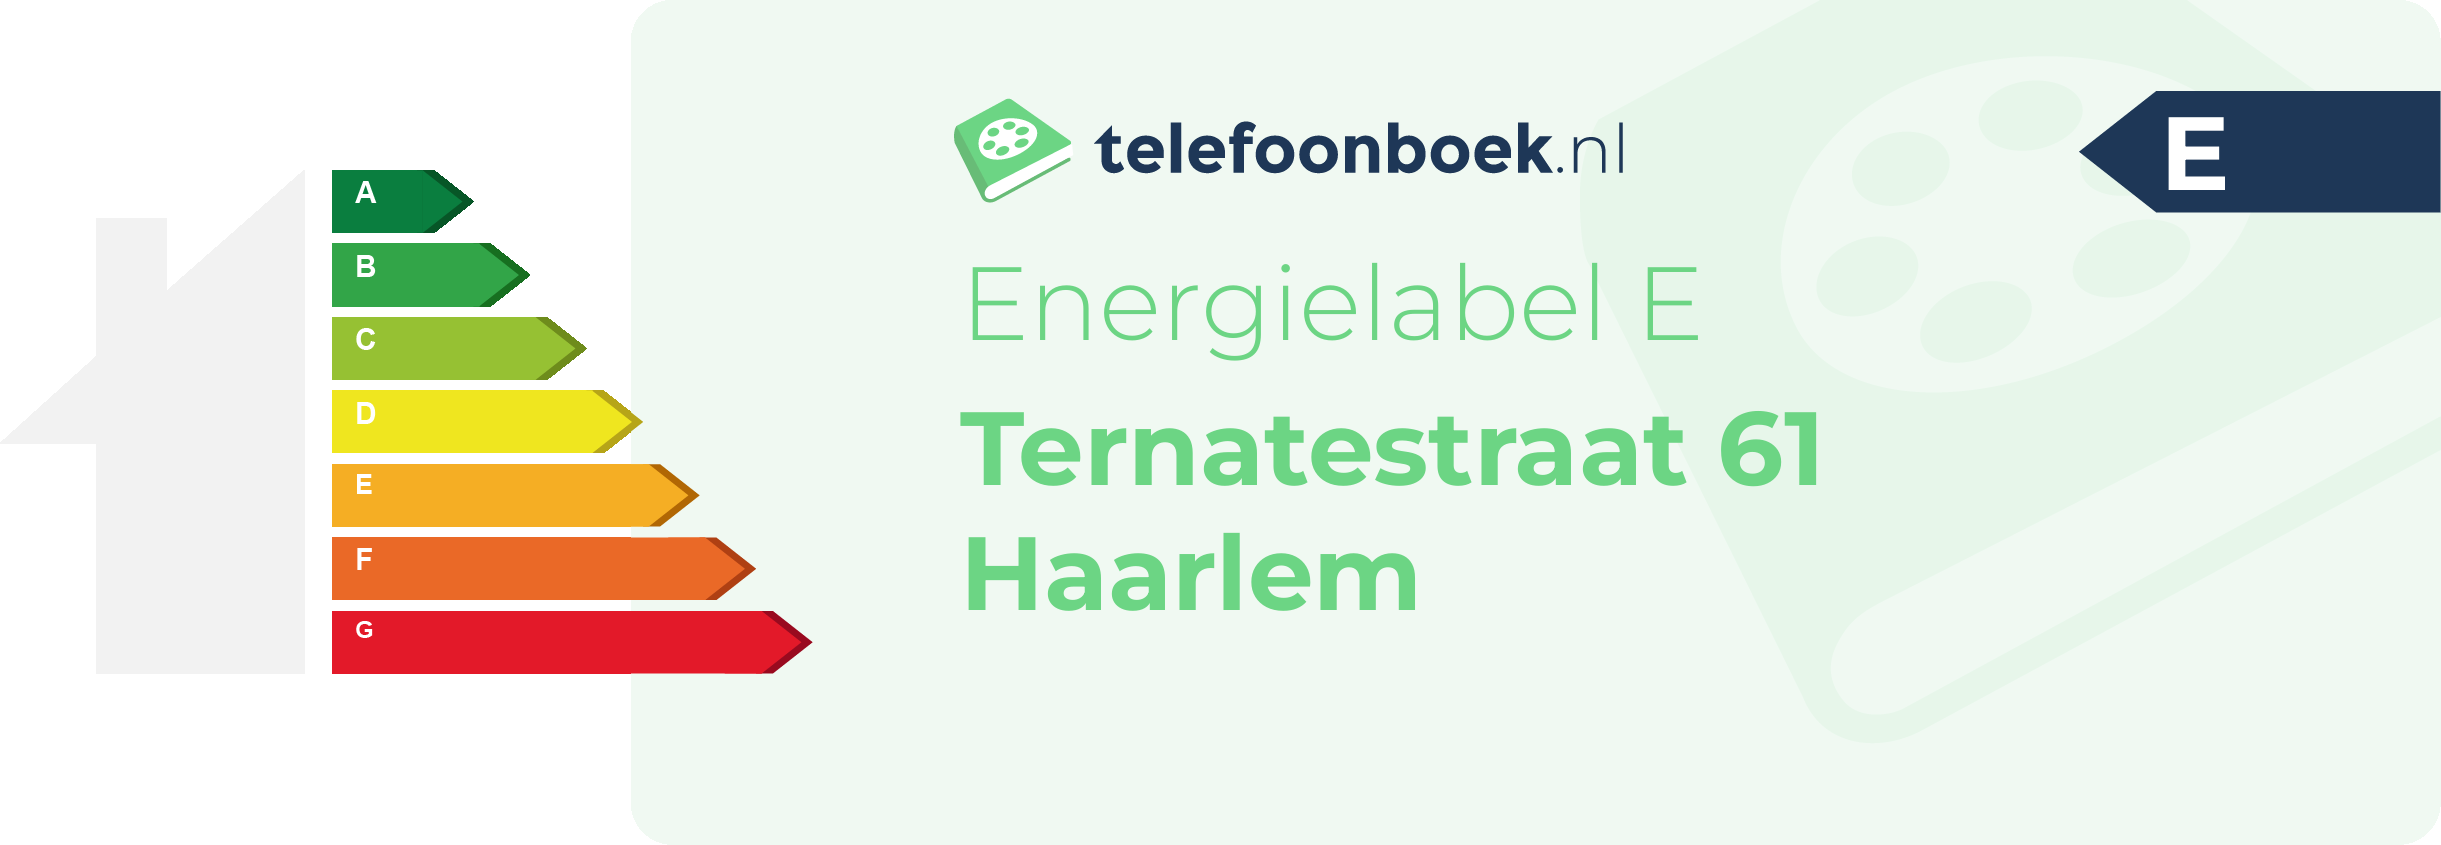 Energielabel Ternatestraat 61 Haarlem